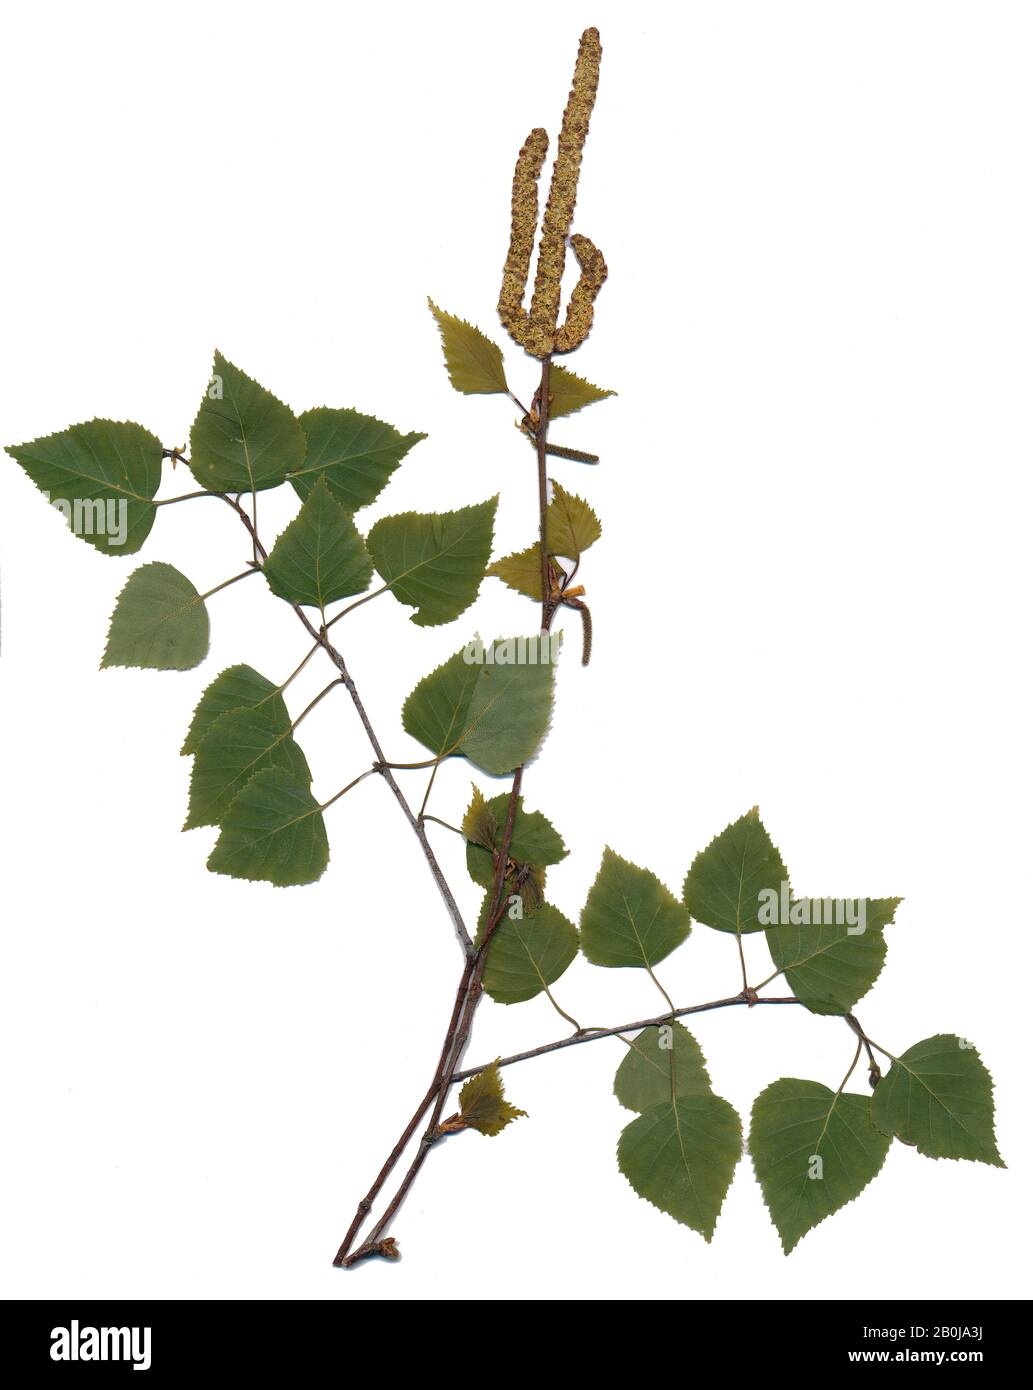 Herbario, abedul, árbol, plantas, naturaleza, hojas, birke, baum, bäume, wald Foto de stock